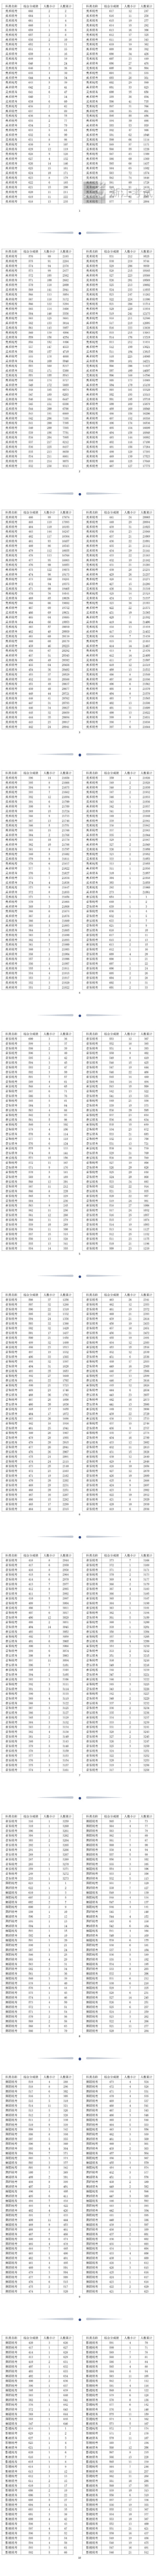 2022浙江艺术高考一分一段表（美术、音乐、舞蹈、影视、时装...）